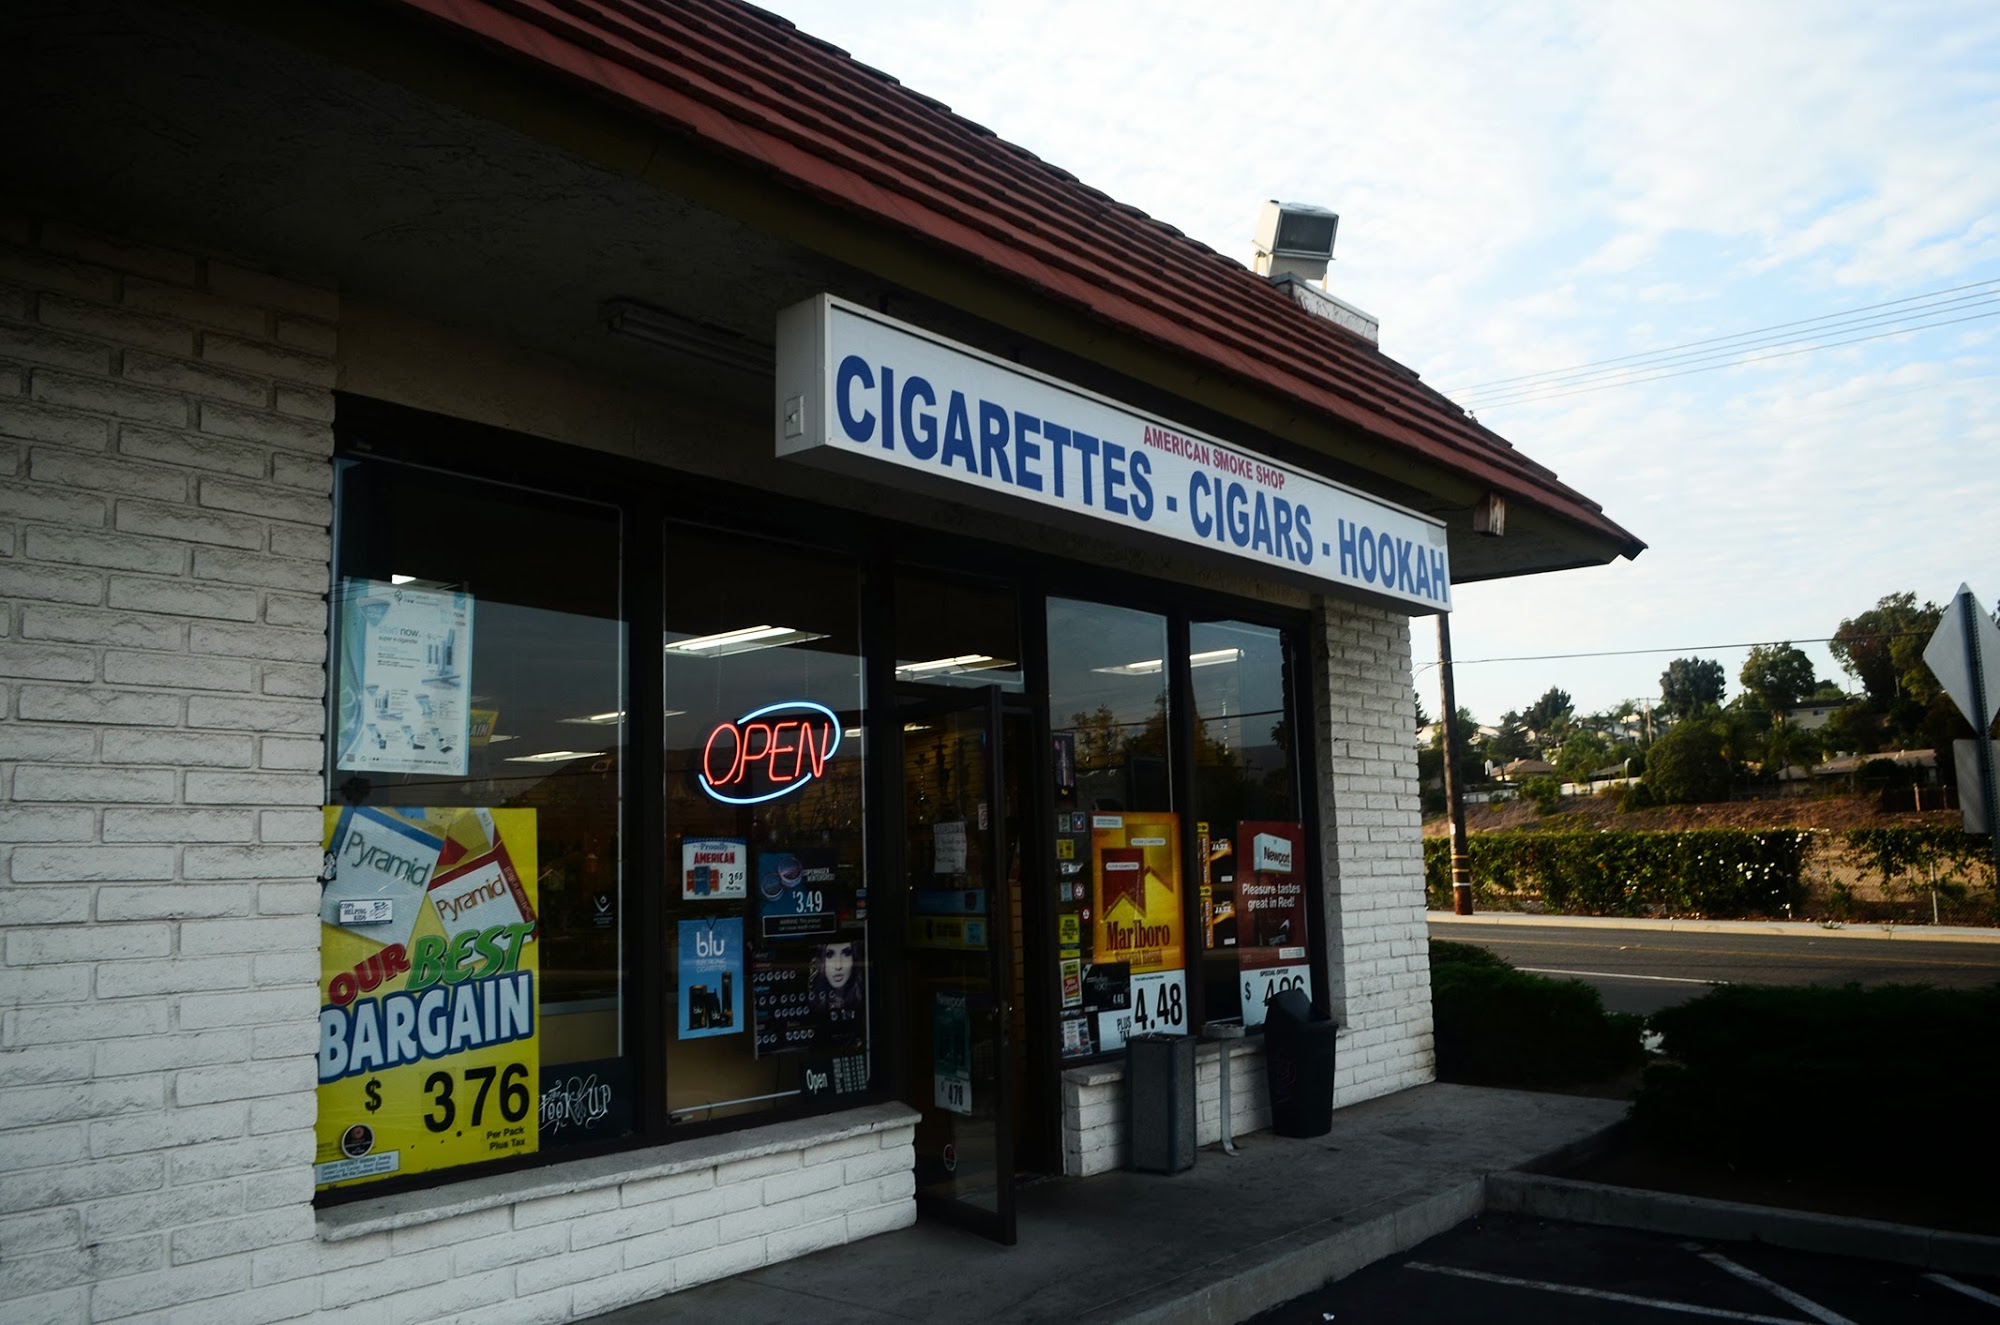 American Smoke Shop